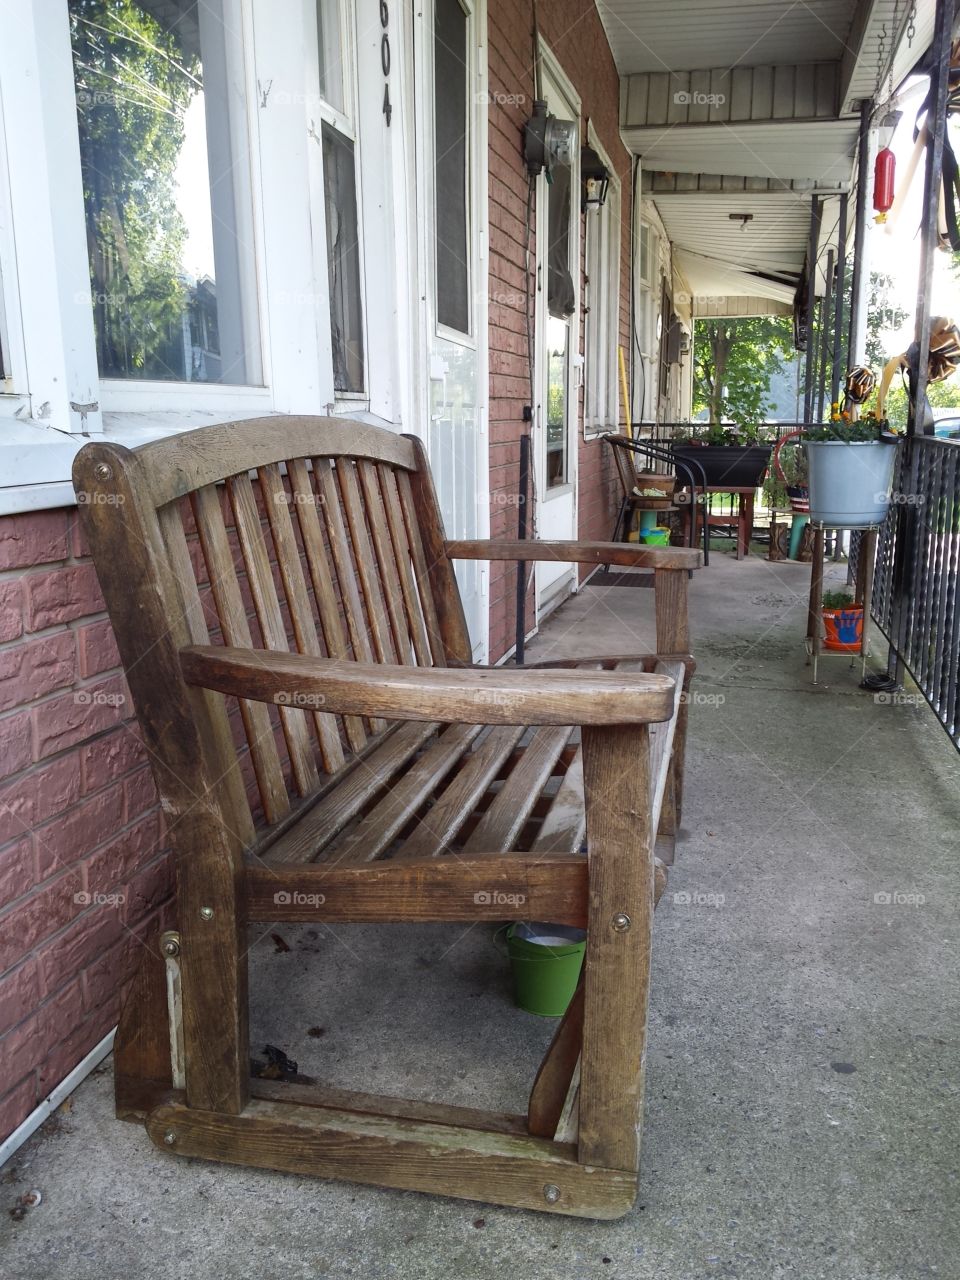 Porch bench.